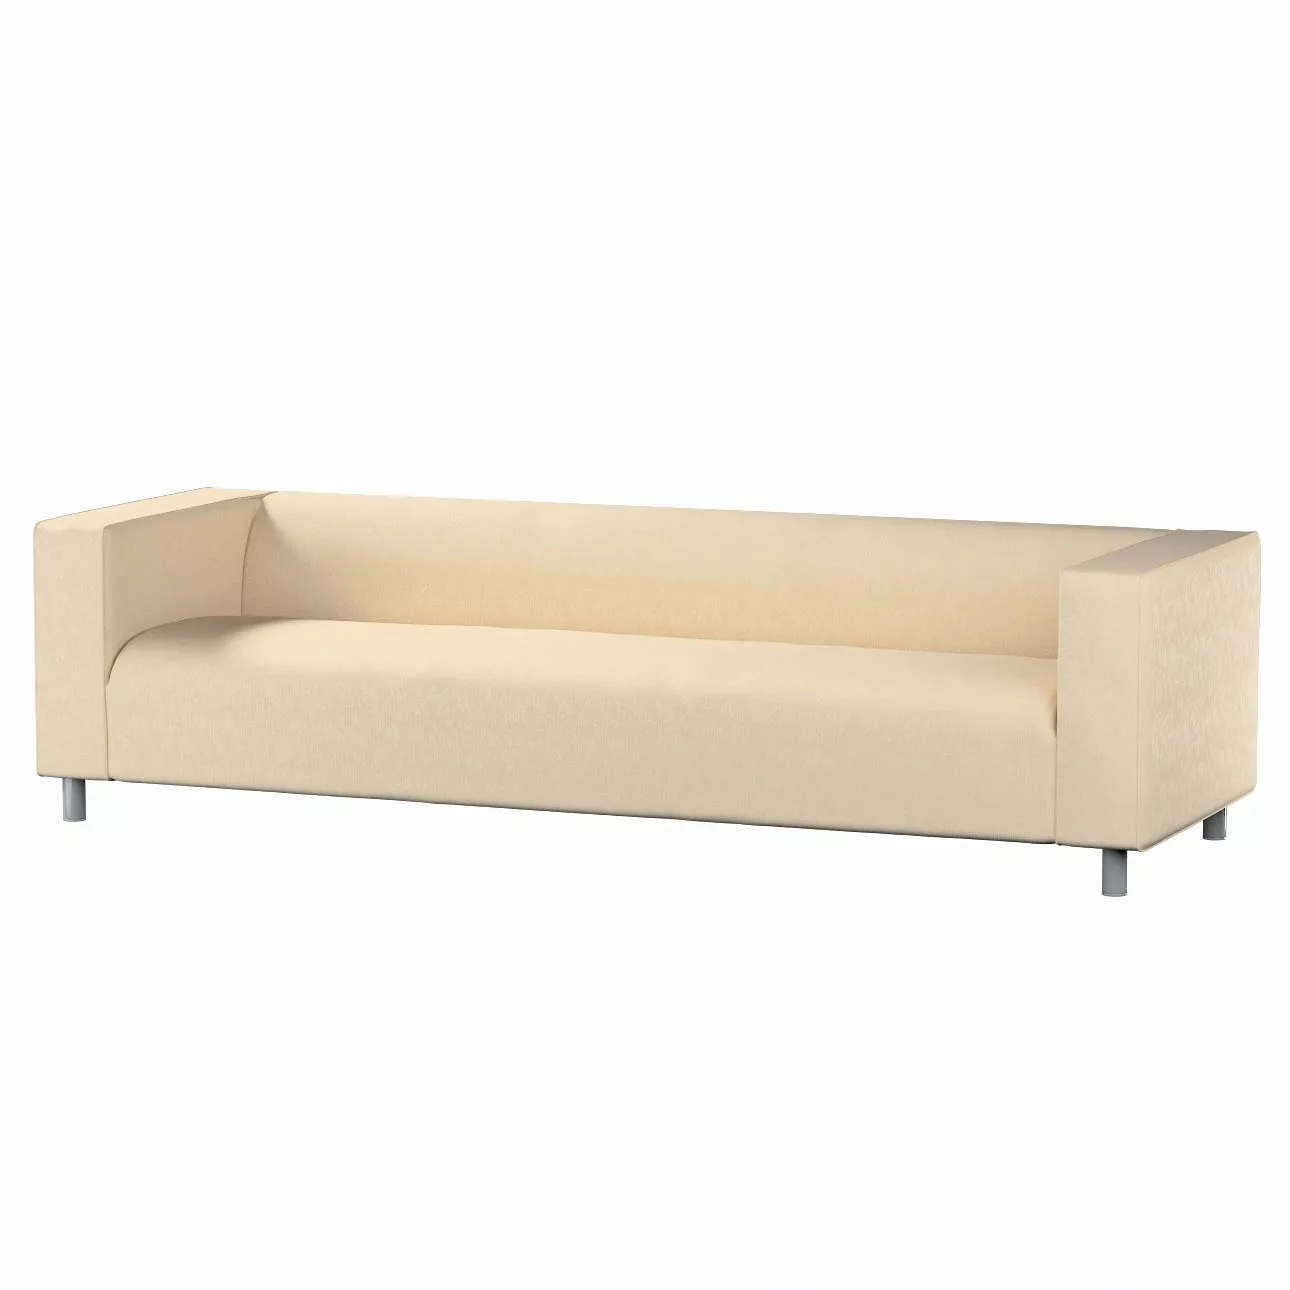 Bezug für Klippan 4-Sitzer Sofa, ecru, Bezug für Klippan 4-Sitzer, Living ( günstig online kaufen